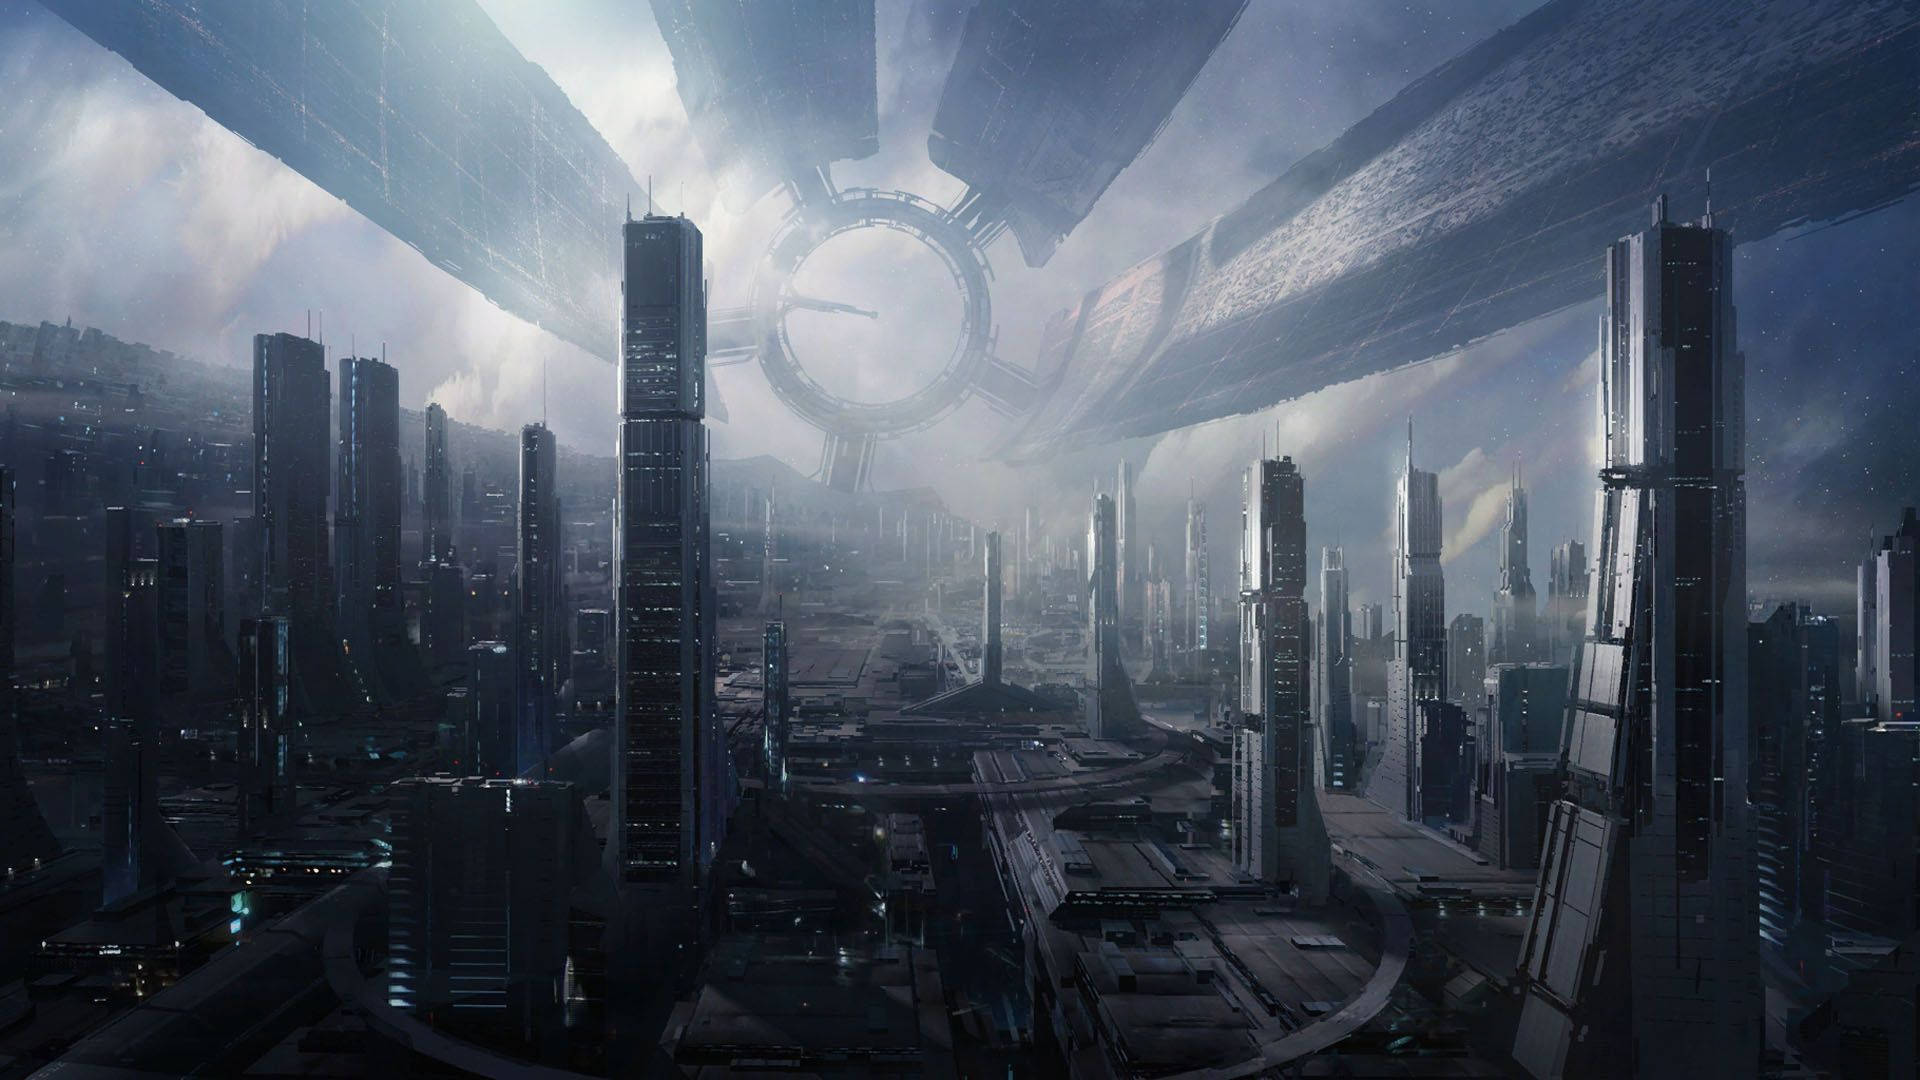 Cyberpunk City Mass Effect Citadel Wallpaper